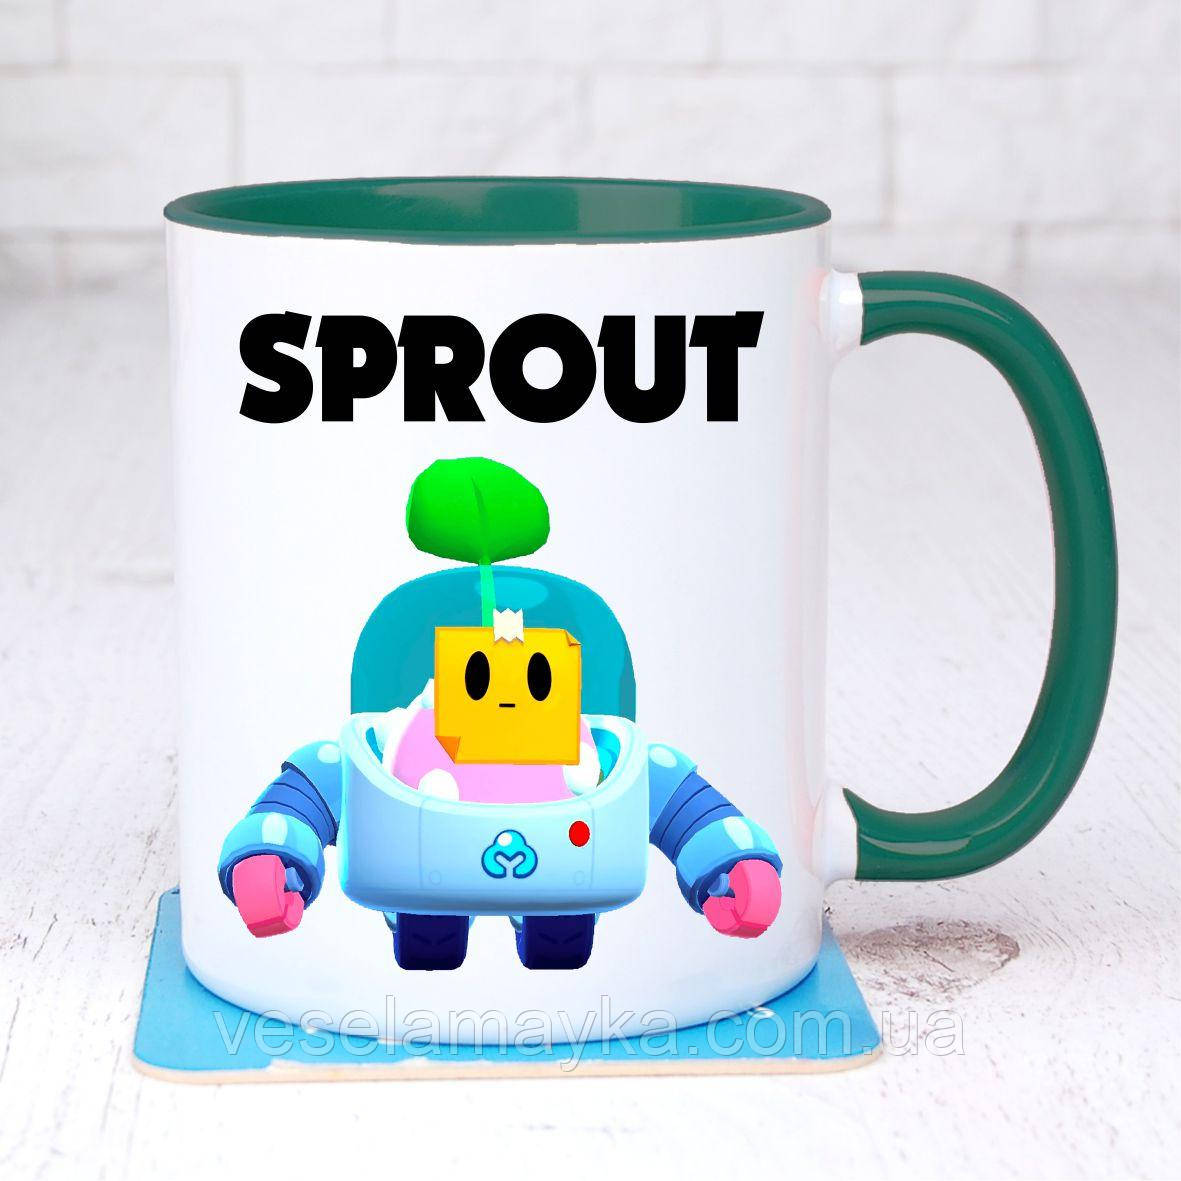 

Чашка BS Спраут 2 (Sprout) Зеленый